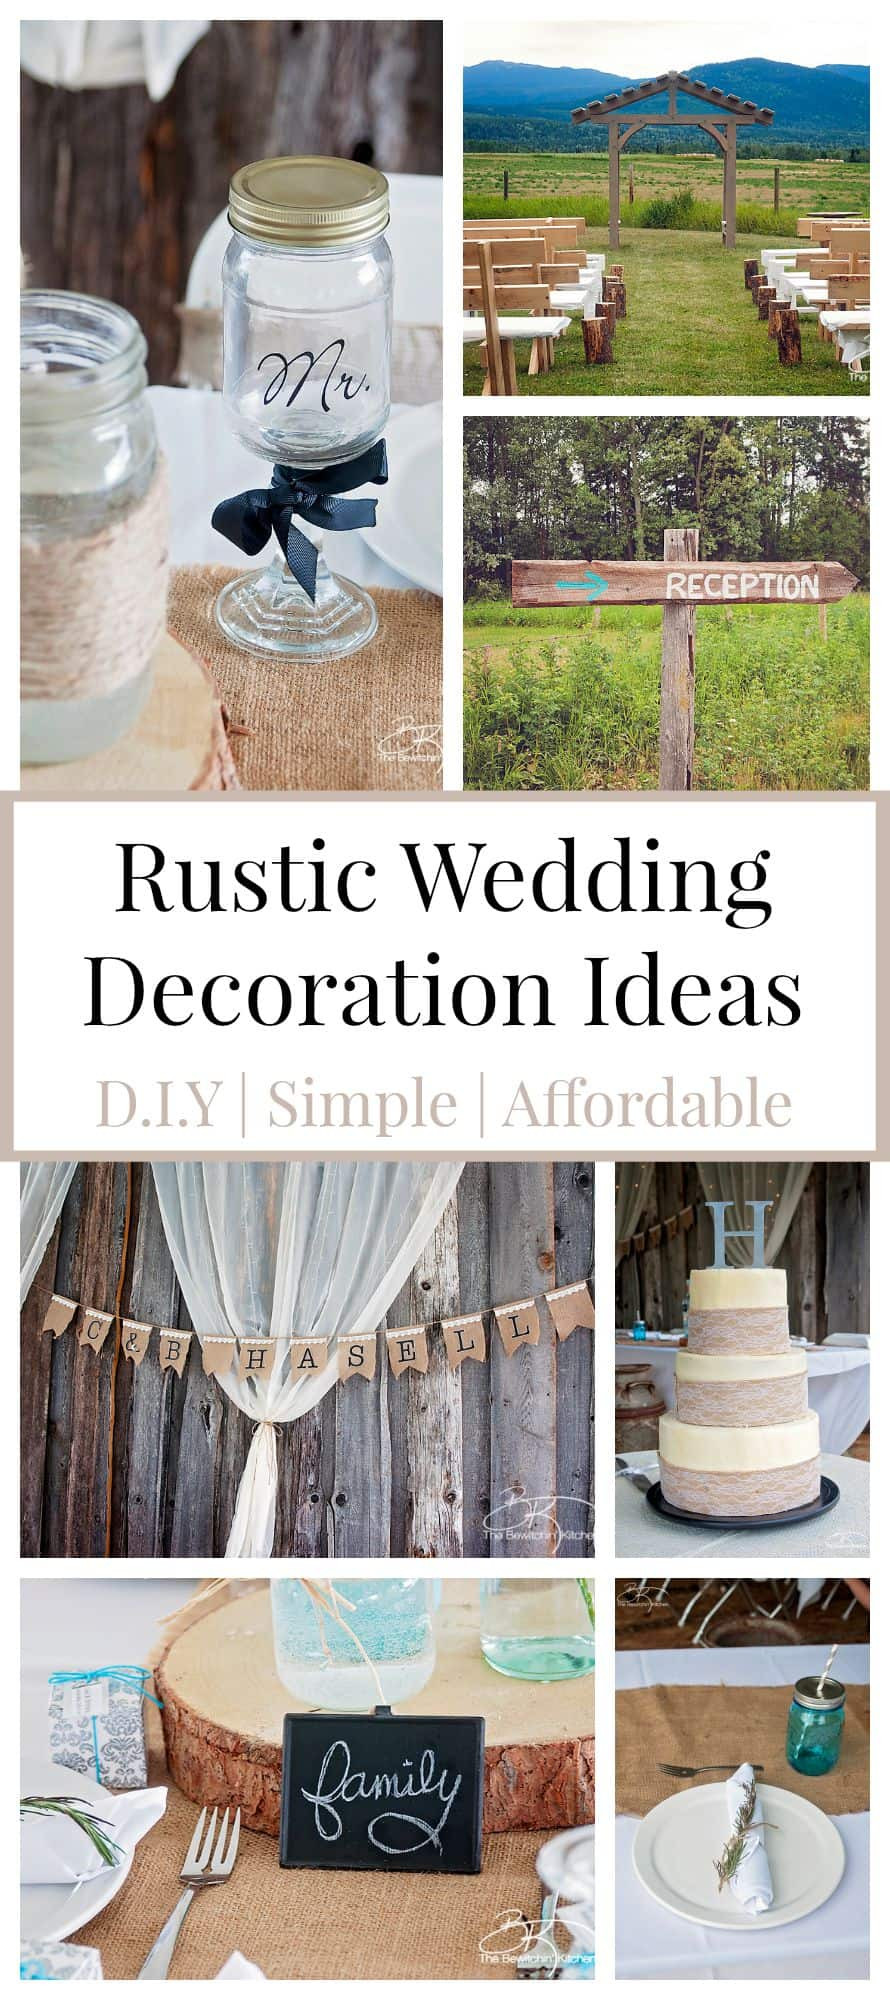 DIY Rustic Wedding Decor
 Rustic Wedding Ideas That Are DIY & Affordable